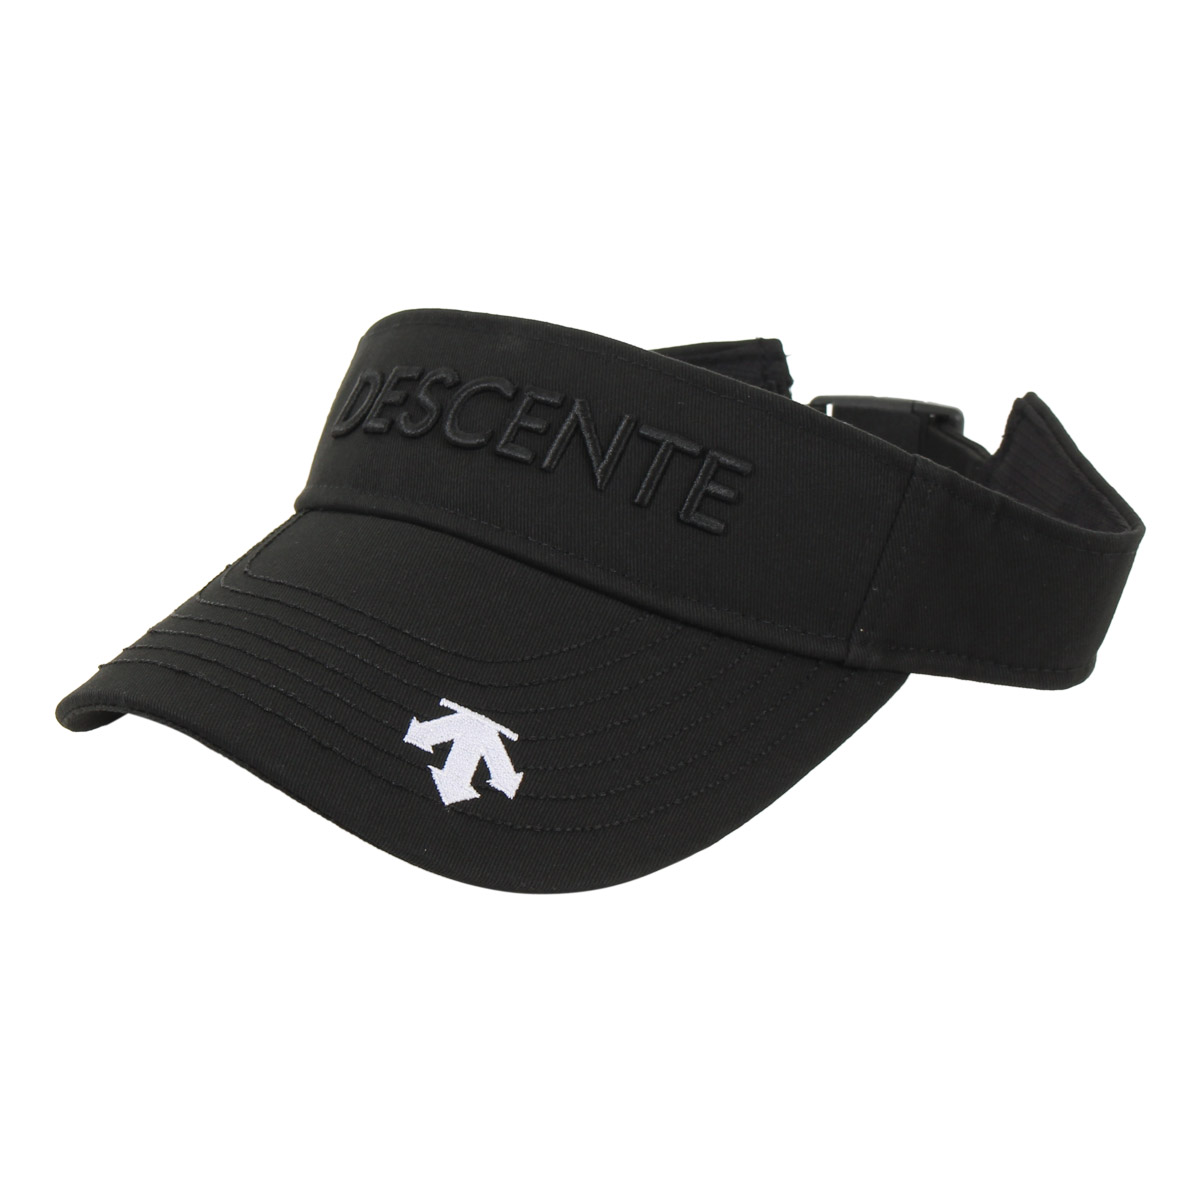 デサント ゴルフ サンバイザー 帽子 メンズ DGBXJC52 DESCENTE 抗菌防臭 吸汗速乾...